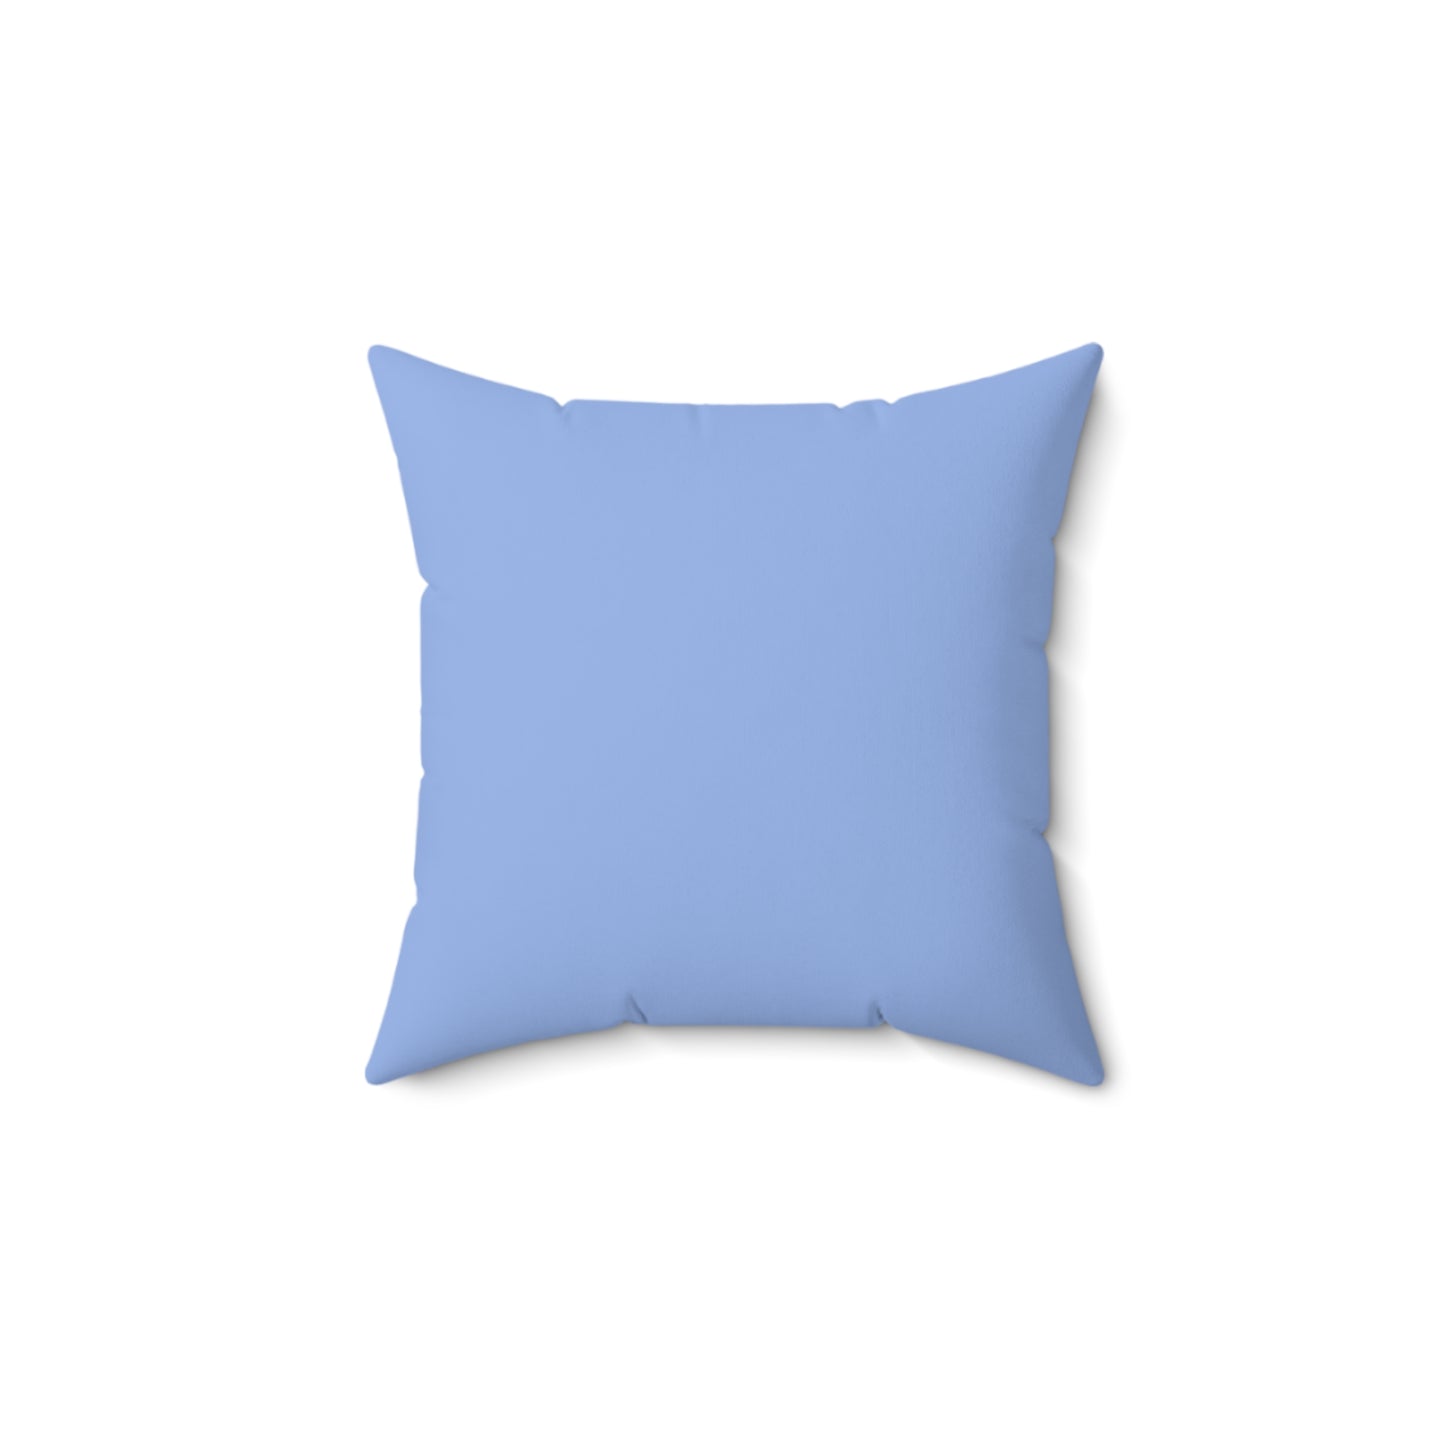 Blue Pillow / Blue Tile Print Decor